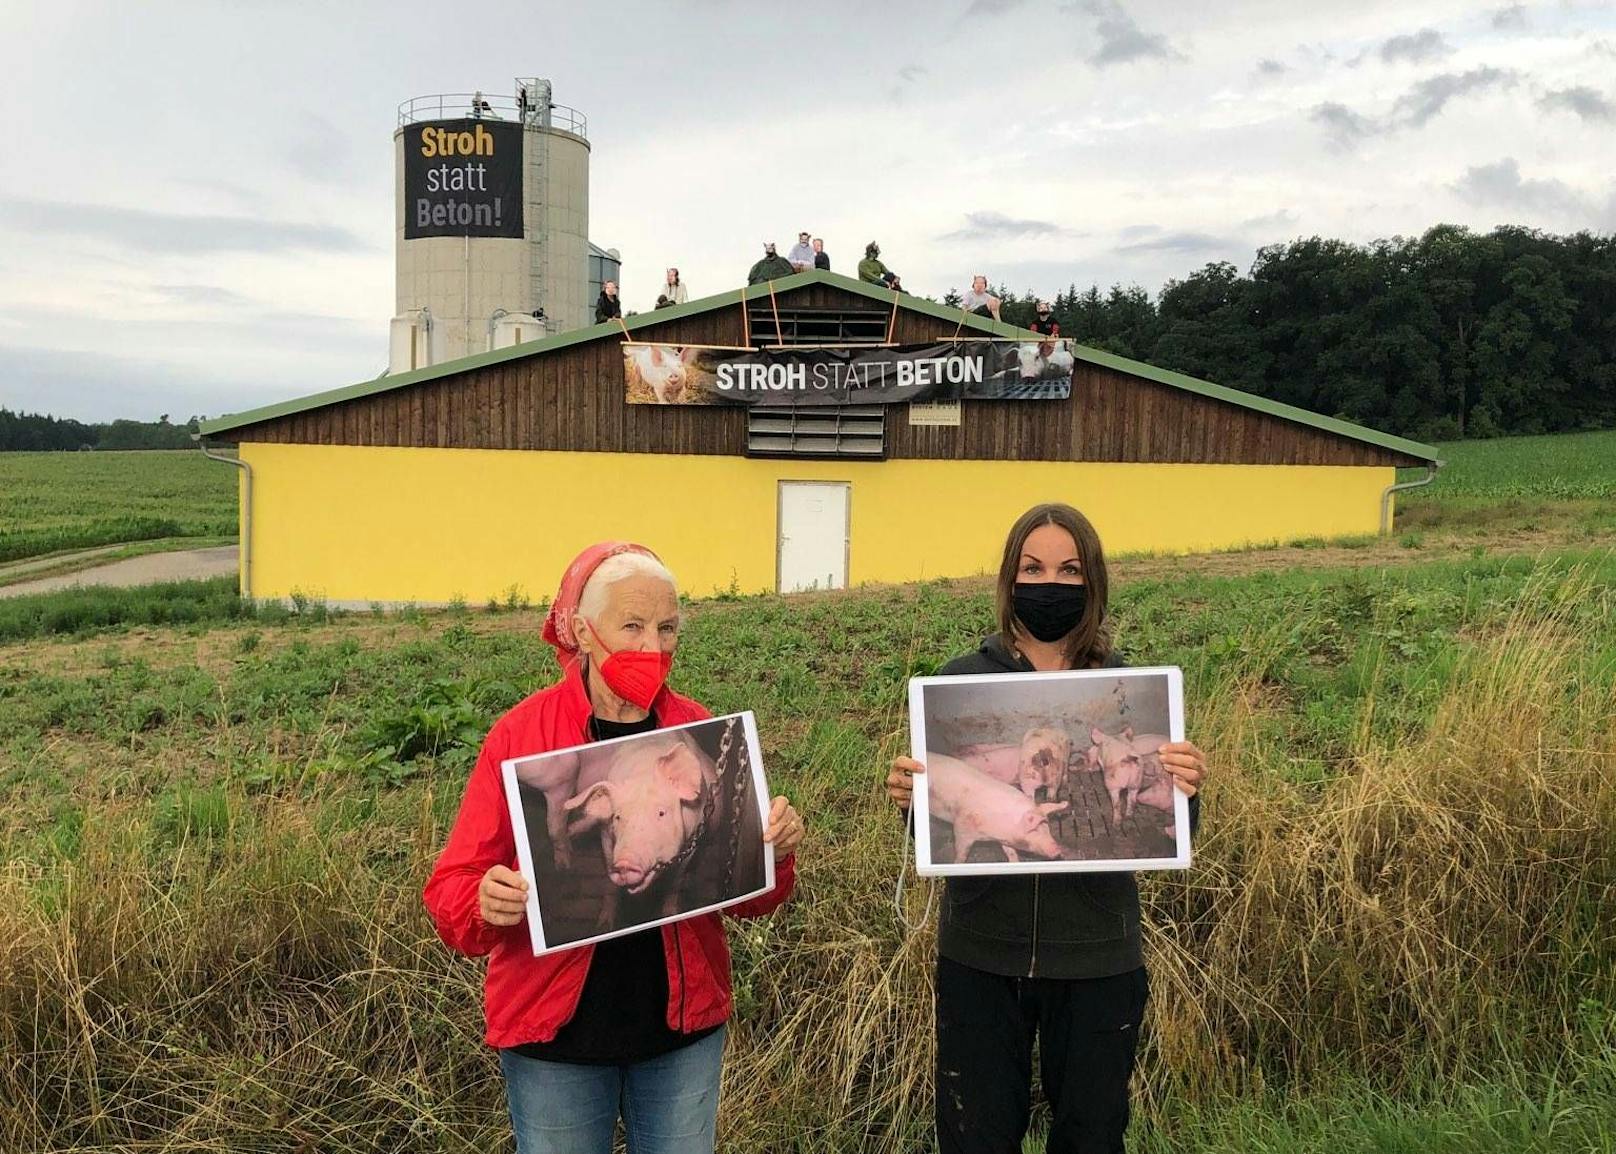 Am 21.07. besetzen Aktivisten des VGT einen Schweinezuchtbetrieb in St. Pölten. 